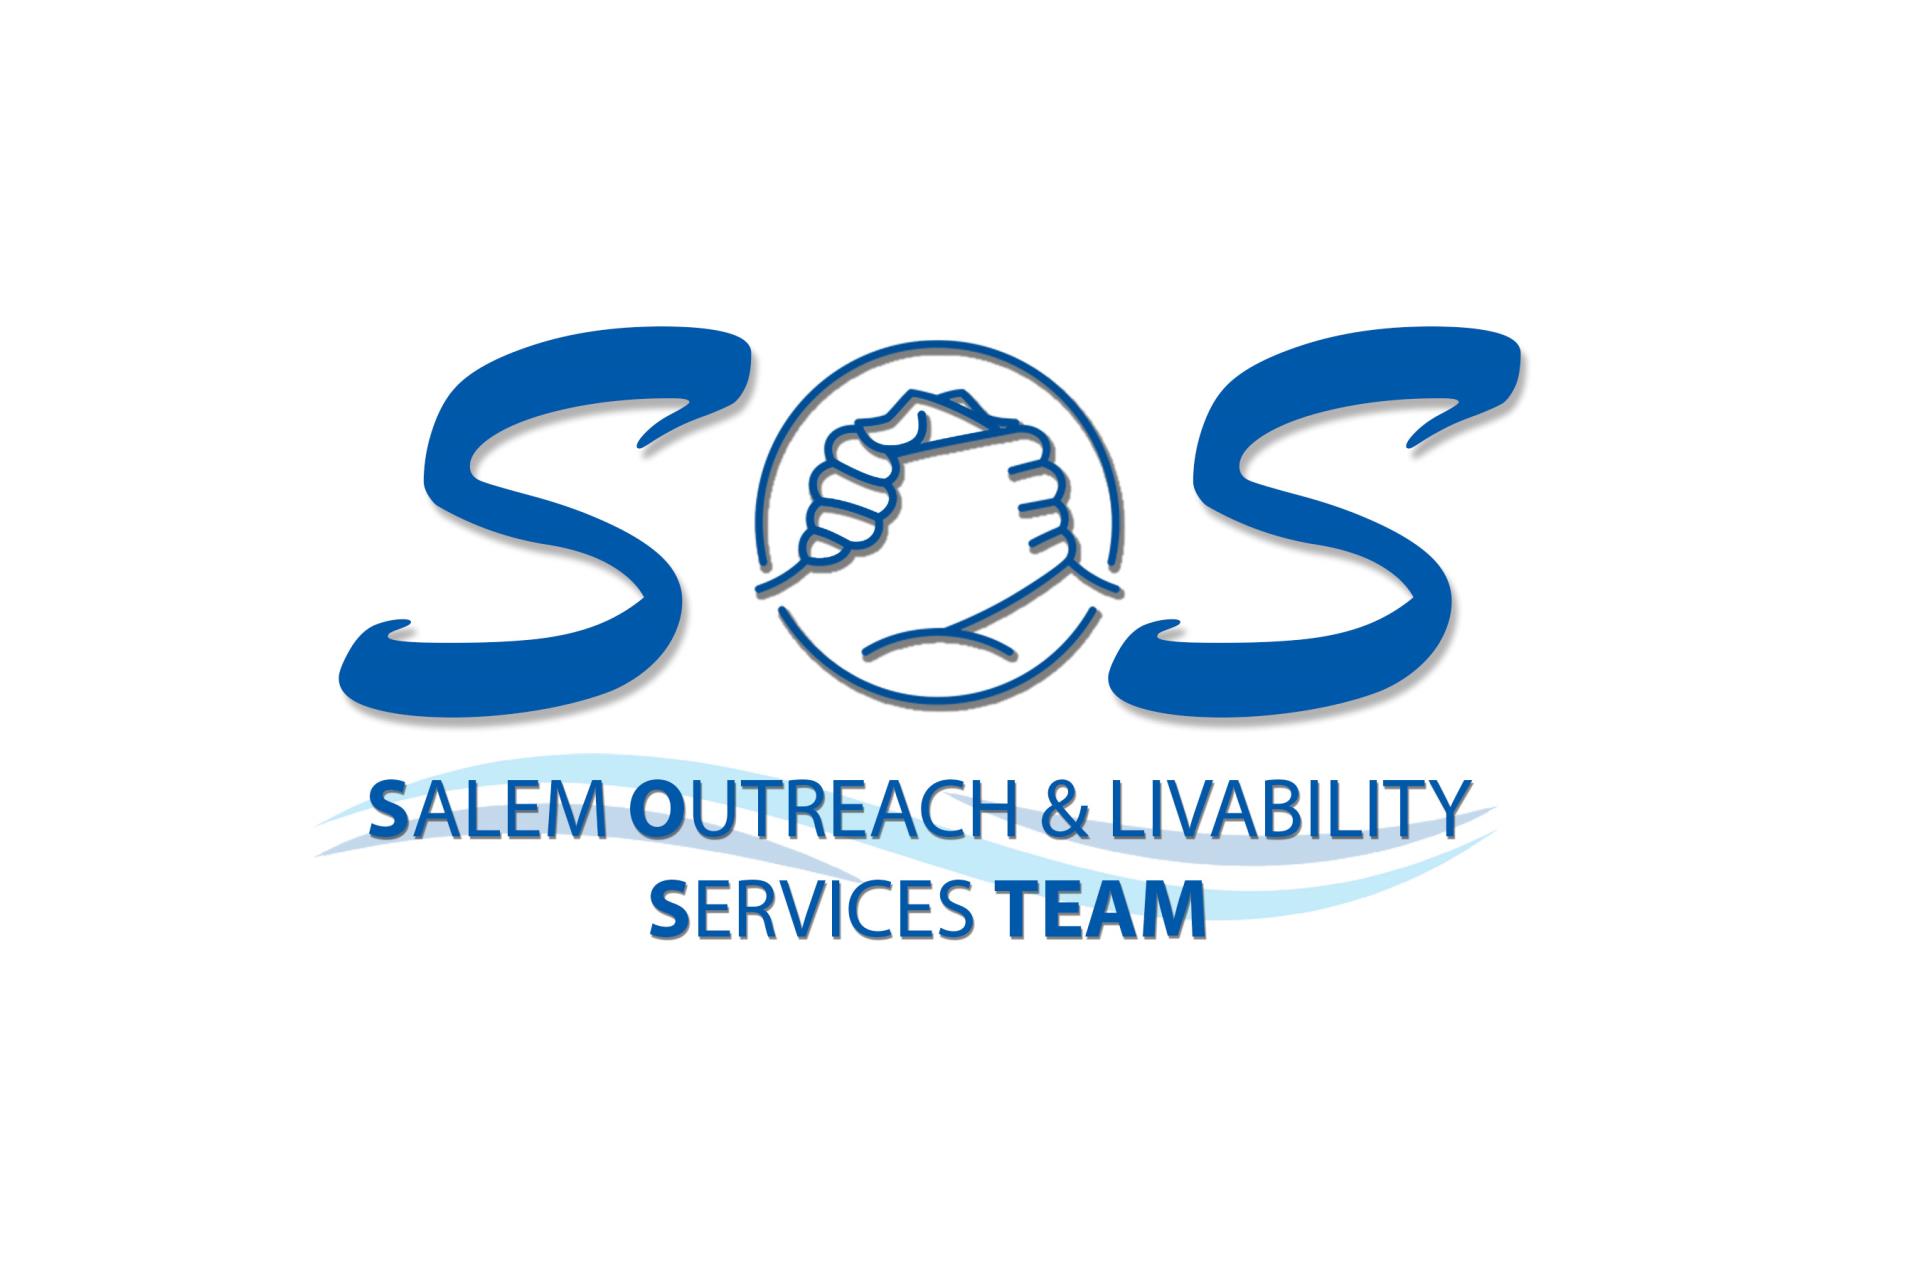 Salem Outreach and Livability Services Team logo